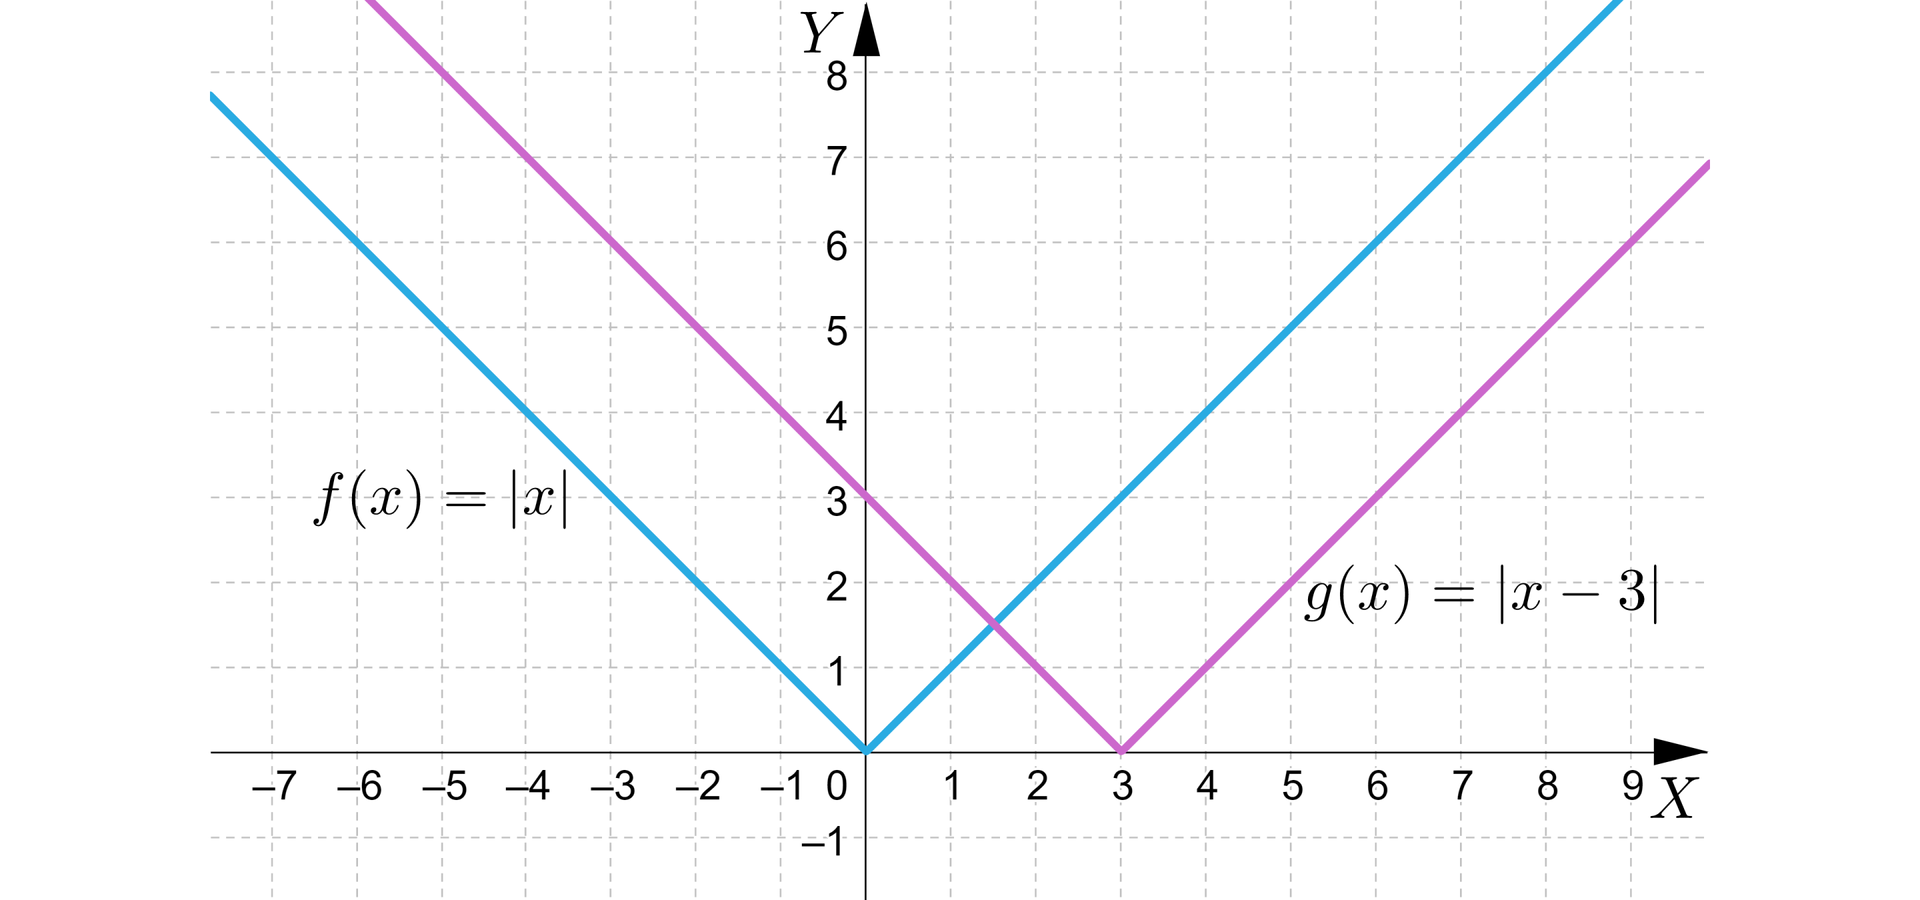  Na rysunku przedstawiony jest układ współrzędnych z poziomą osią X od minus jedenastu do pięciu oraz z pionową osią Y od minus jeden do ośmiu. W układzie zaznaczono dwa wykresy funckji w postaci łamanych. Pierwszy wykres funckji maleje do początku układu współrzędnych przechodząc przez punkty  -2,2 oraz  -1,1  a następnie rośnie przechodząc przez punkty o współrzędnych 1,1 i 2,2. Wykres funckji opisany jest wzorem  fx=x.  Drugi wykres funckji maleje do punktu 3,0 przechodząc przez punkty  -2,5 oraz  -1,4  a następnie rośnie przechodząc przez punkty o współrzędnych 5,2 i 6,3. Wykres funckji opisany jest wzorem  fx=x-3.